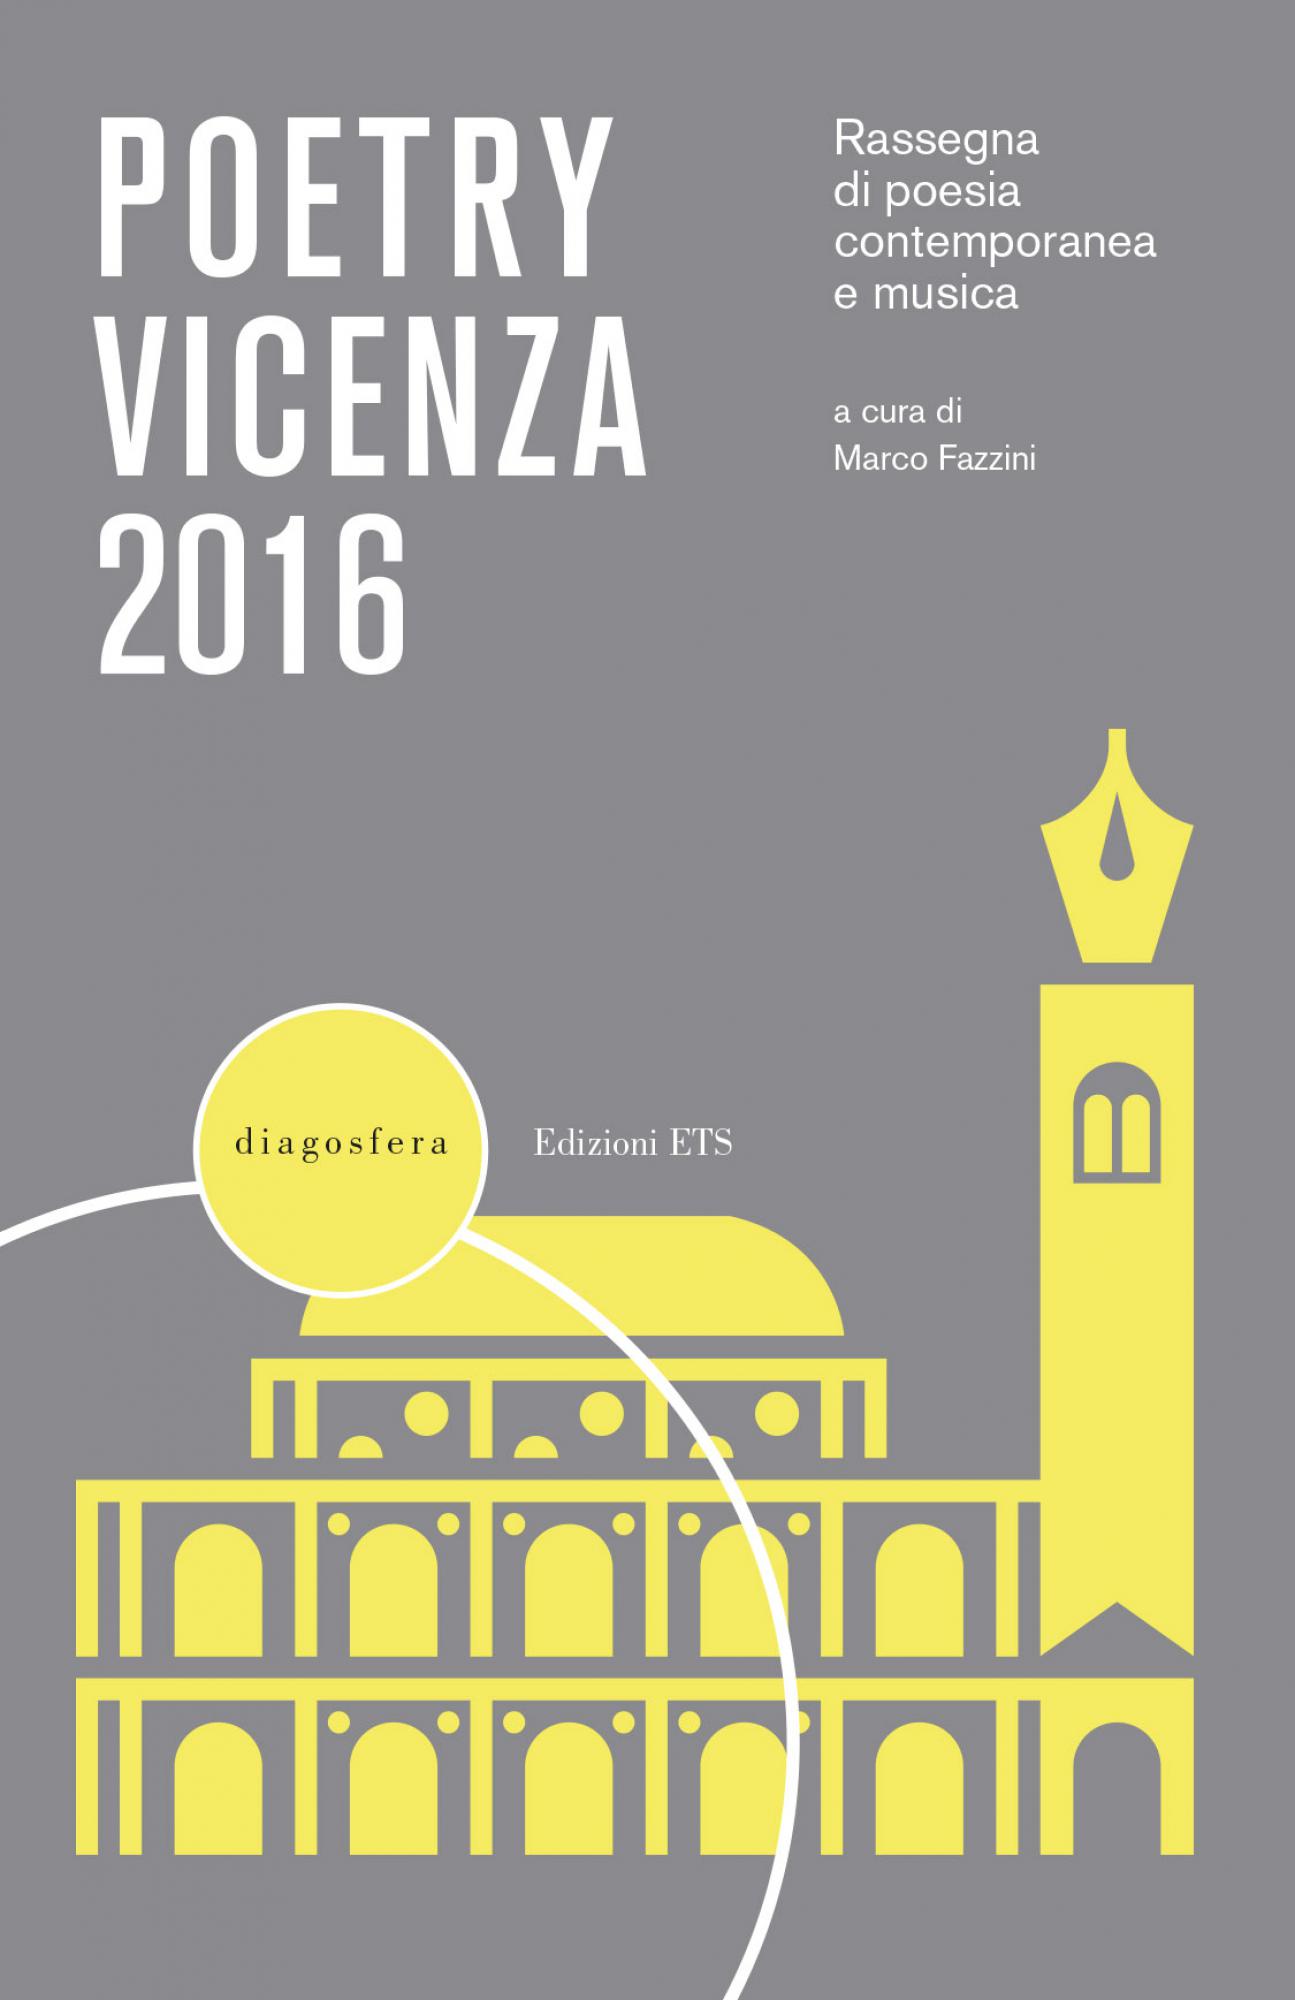 Poetry Vicenza 2016.Rassegna di poesia contemporanea e musica